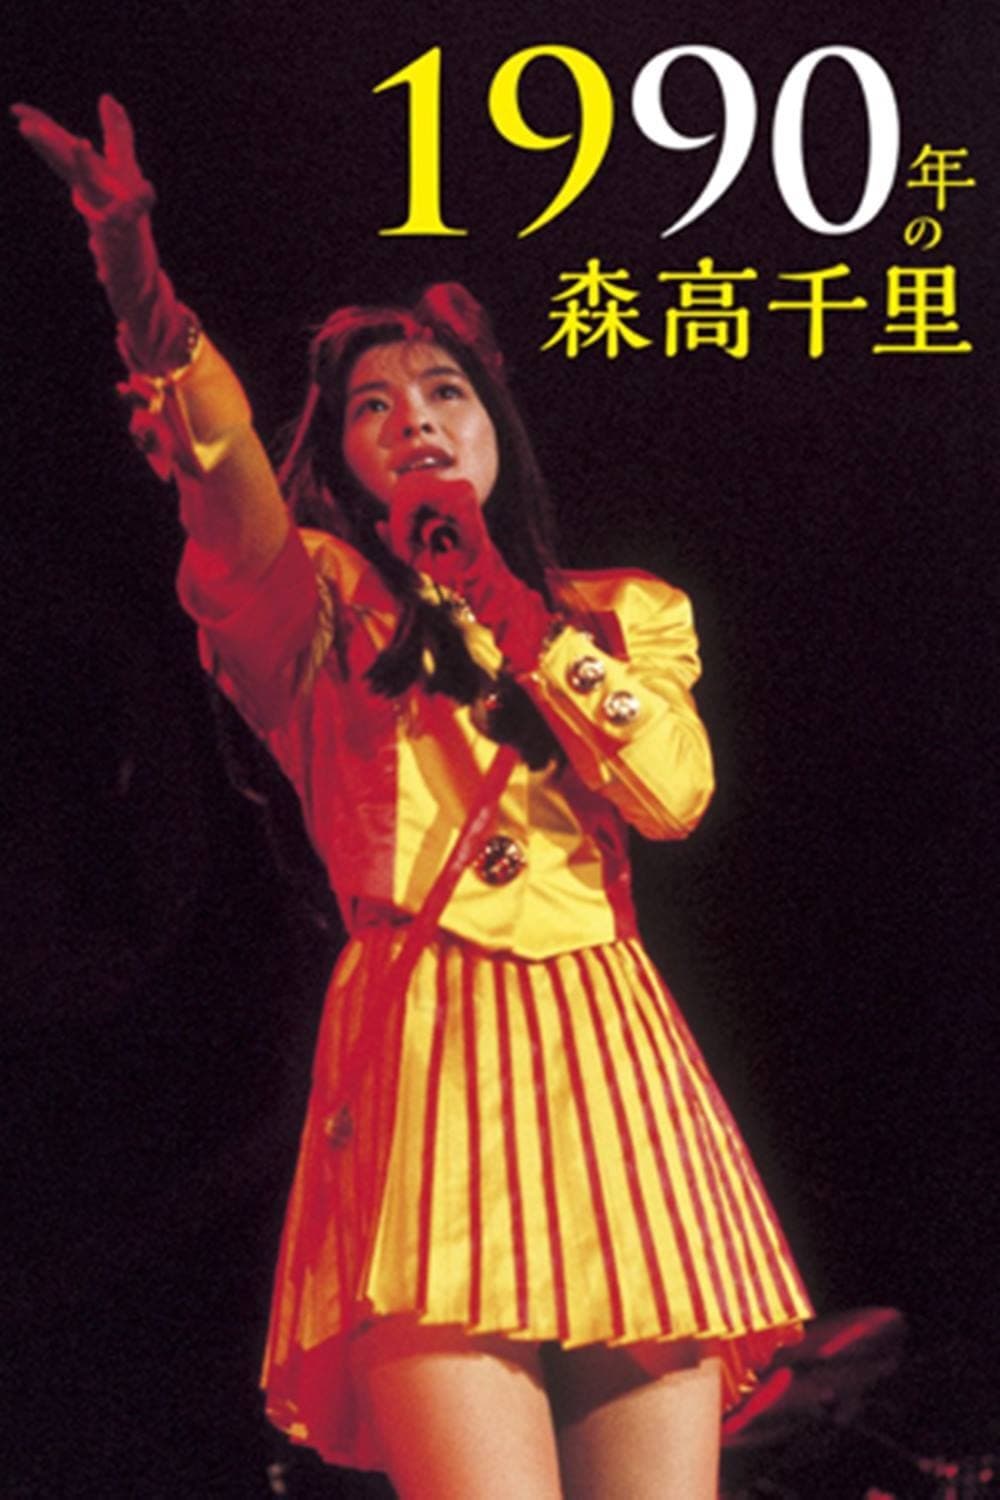 1990 Nen no Moritaka Chisato